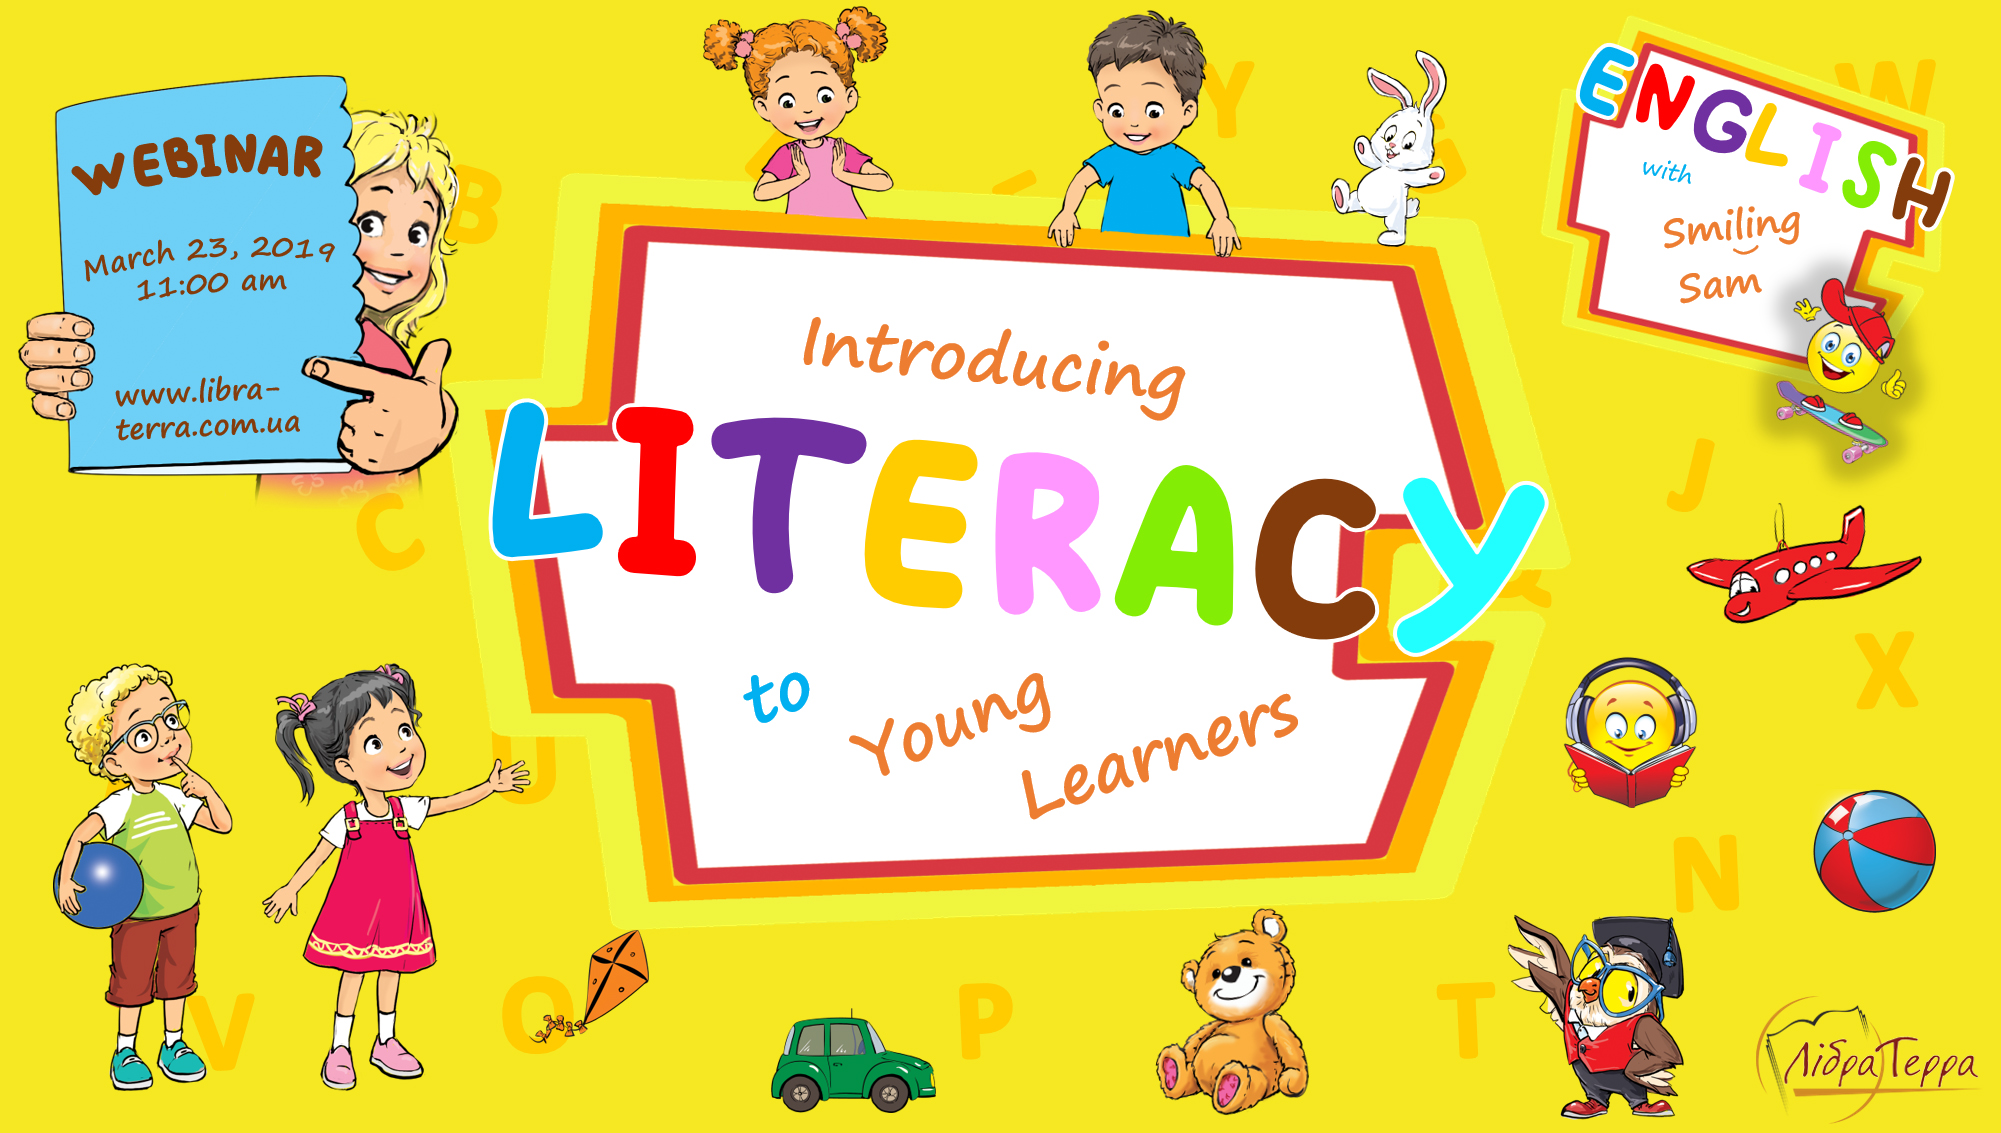 Вебінар для вчителів НУШ «INTRODUCING LITERACY TO YOUNG LEARNERS»